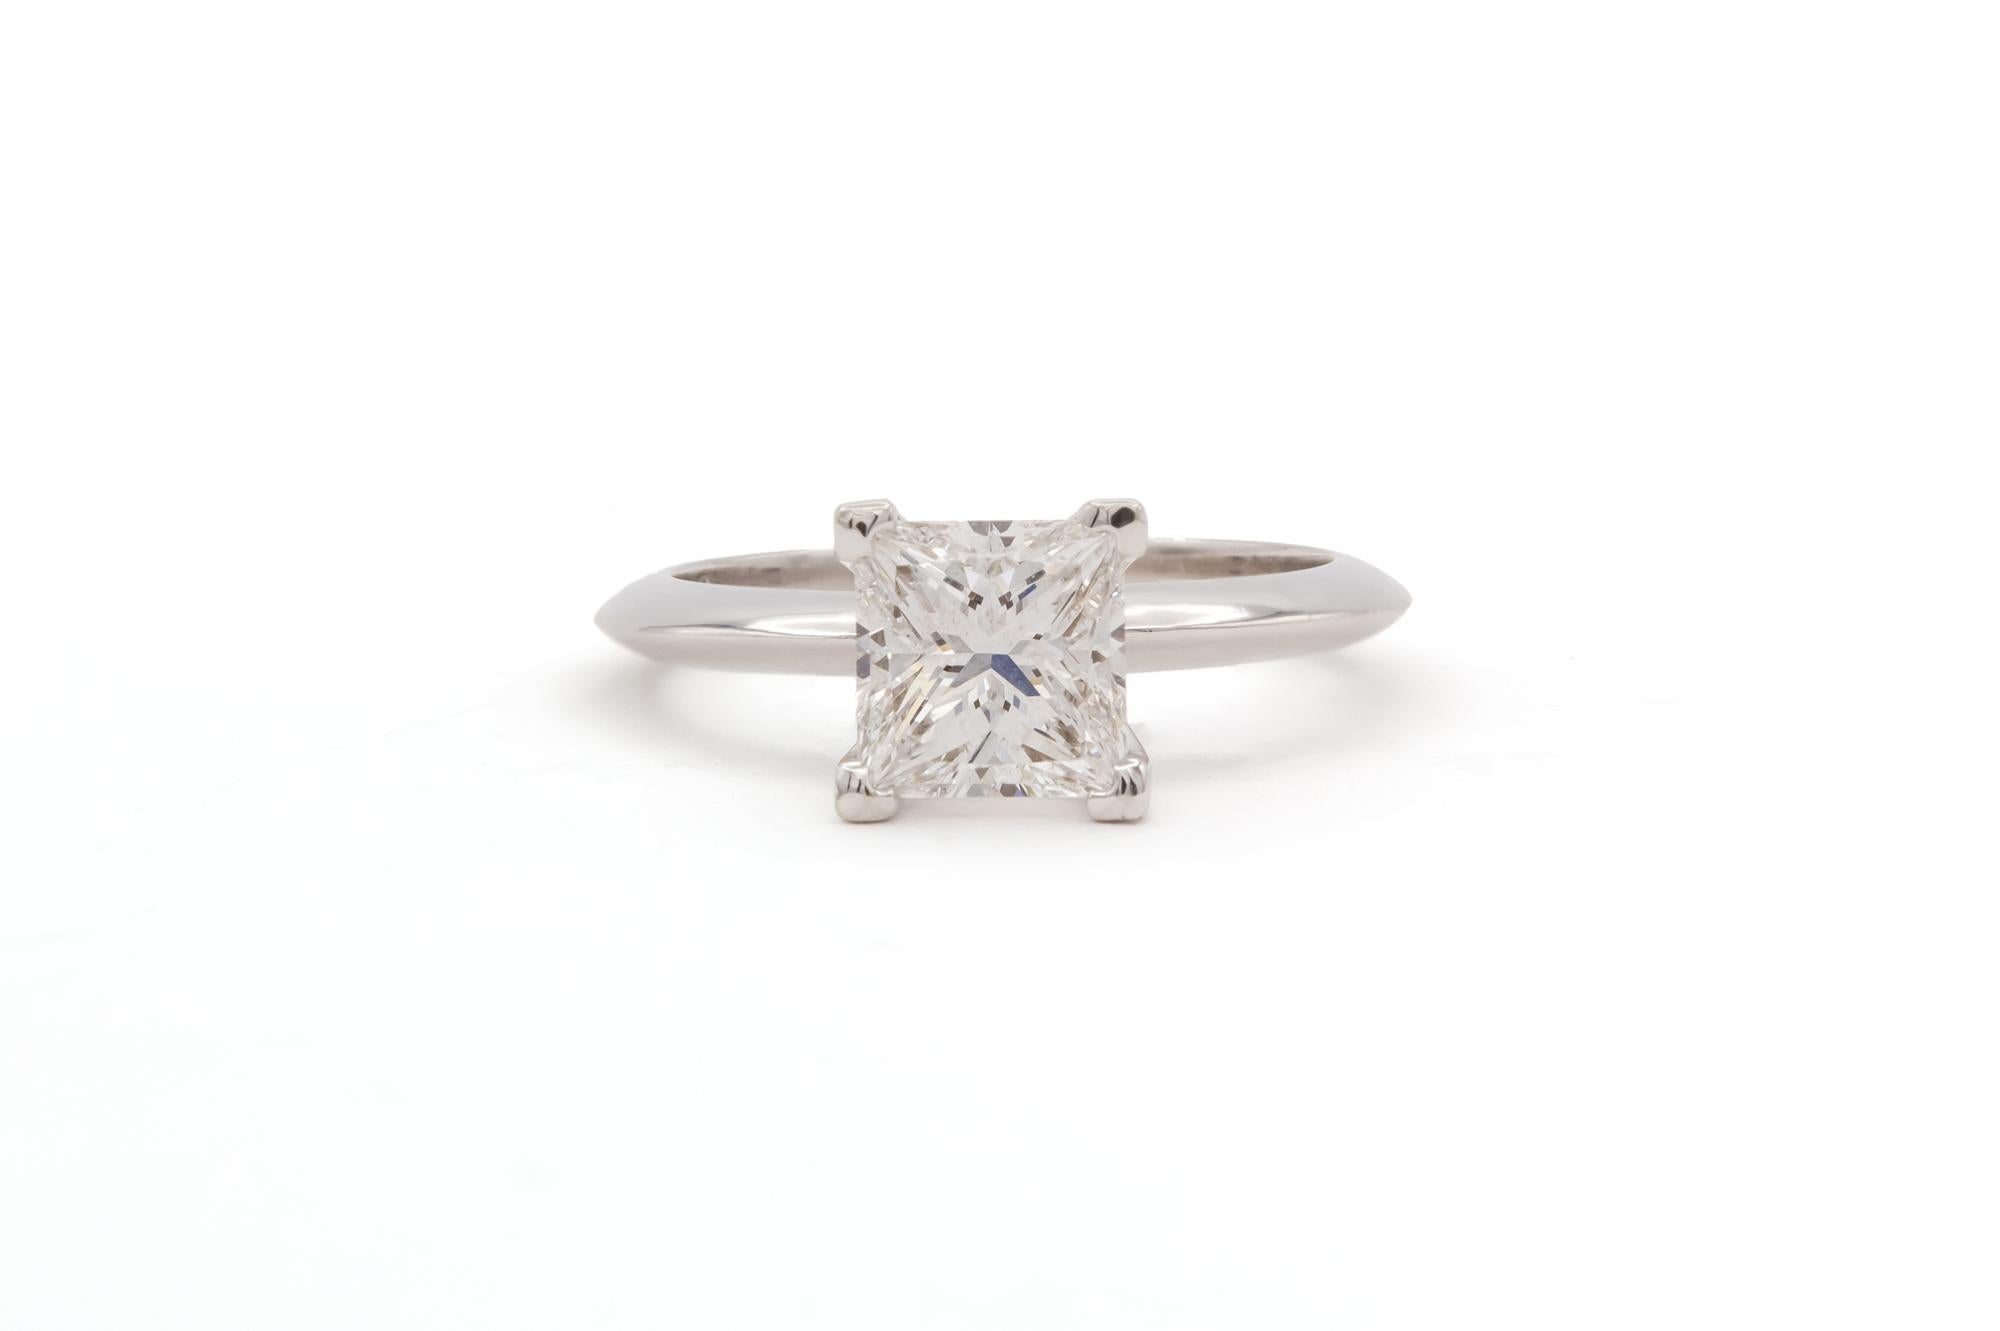 Wir freuen uns, diese GIA Certified Platinum & Princess Cut Diamond Solitaire Verlobungsring bieten. Dieser schöne Ring verfügt über eine GIA-zertifiziert und Laser beschriftet 1,65ct D / VS2 Prinzessin geschnittenen Diamanten in einem klassischen